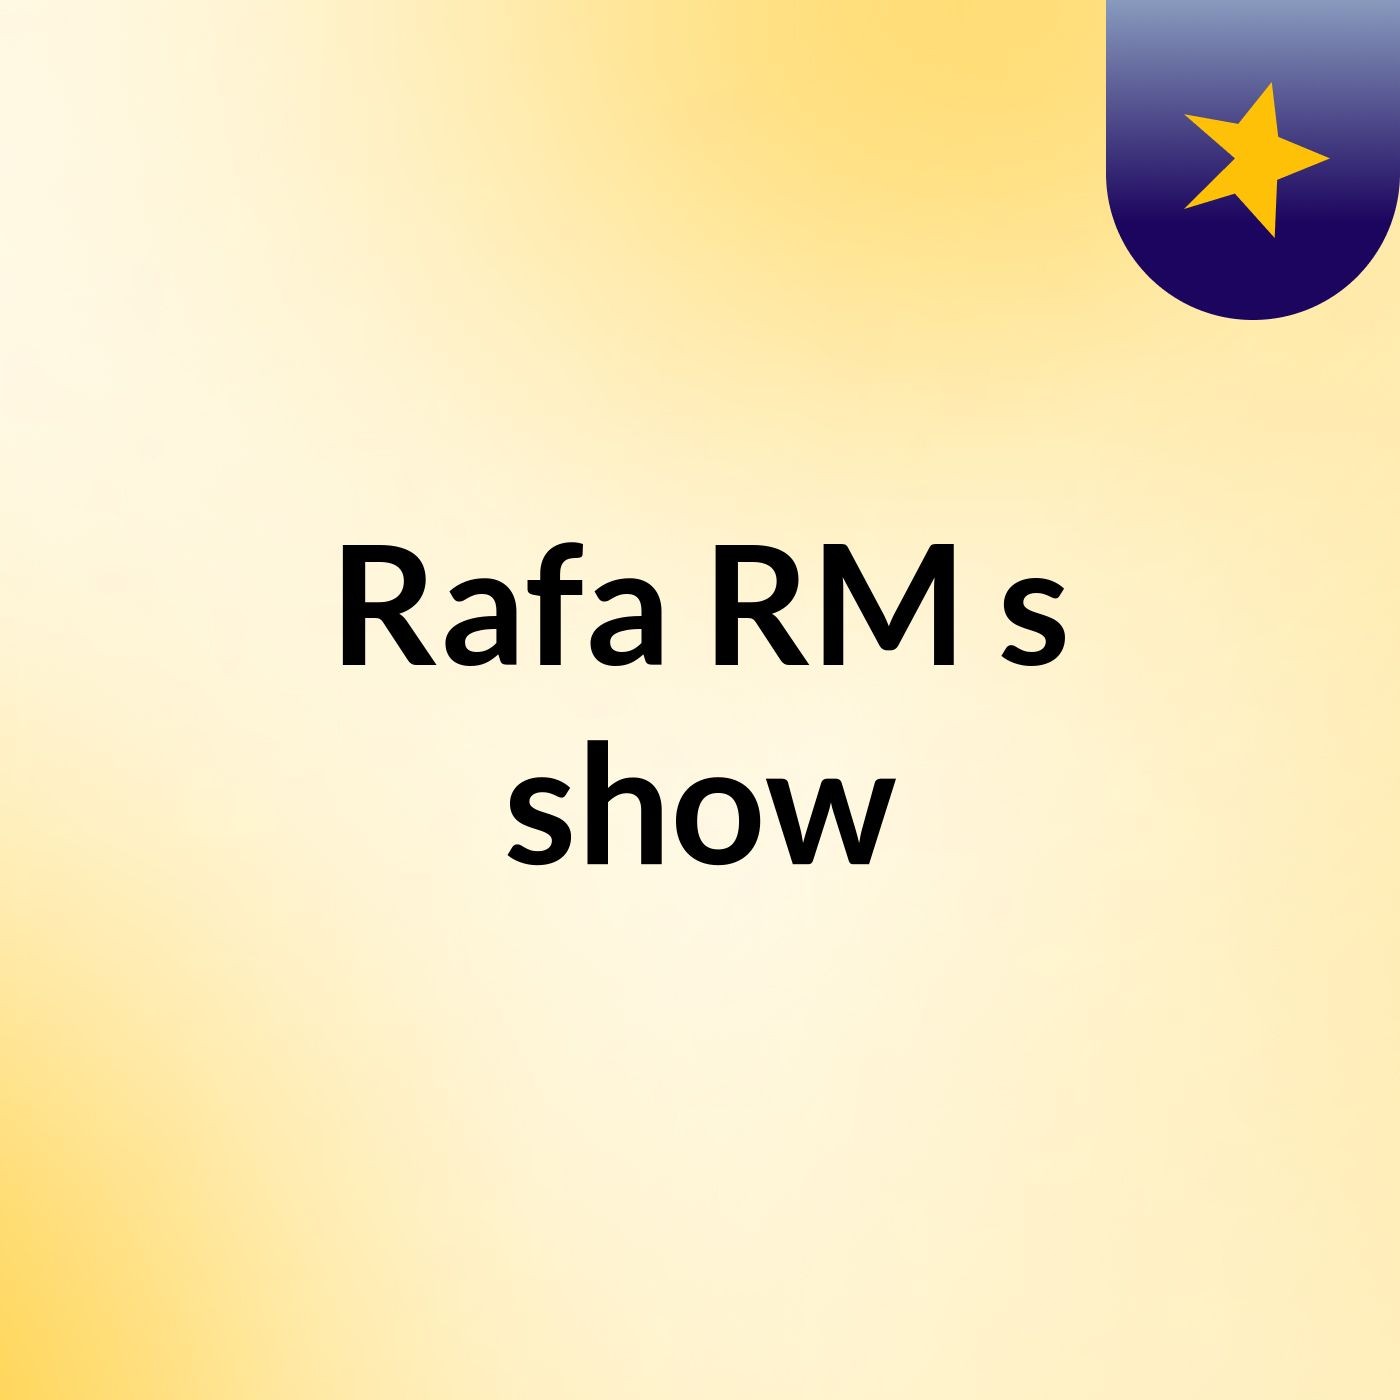 Rafa RM's show